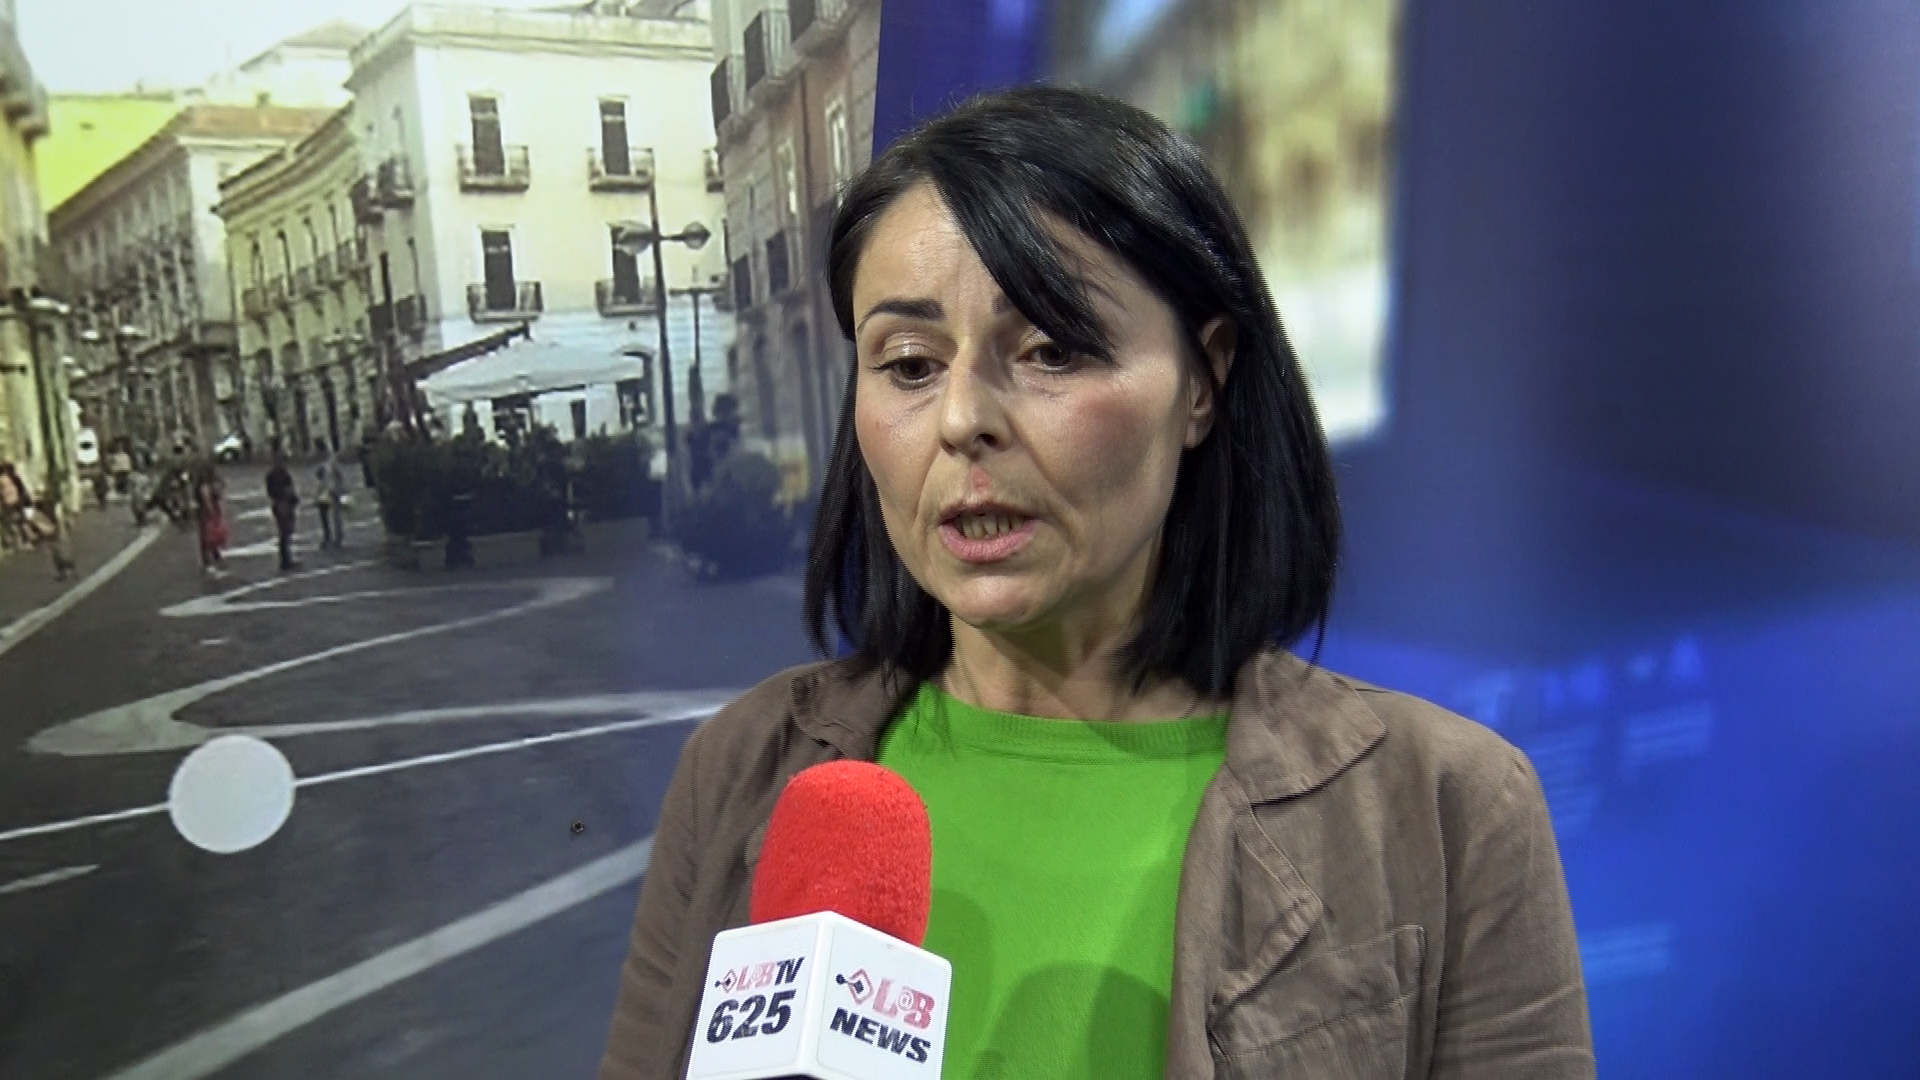 DDL Pillon, Rita Maio alle parlamentari M5S e PD: opposizione ad oltranza